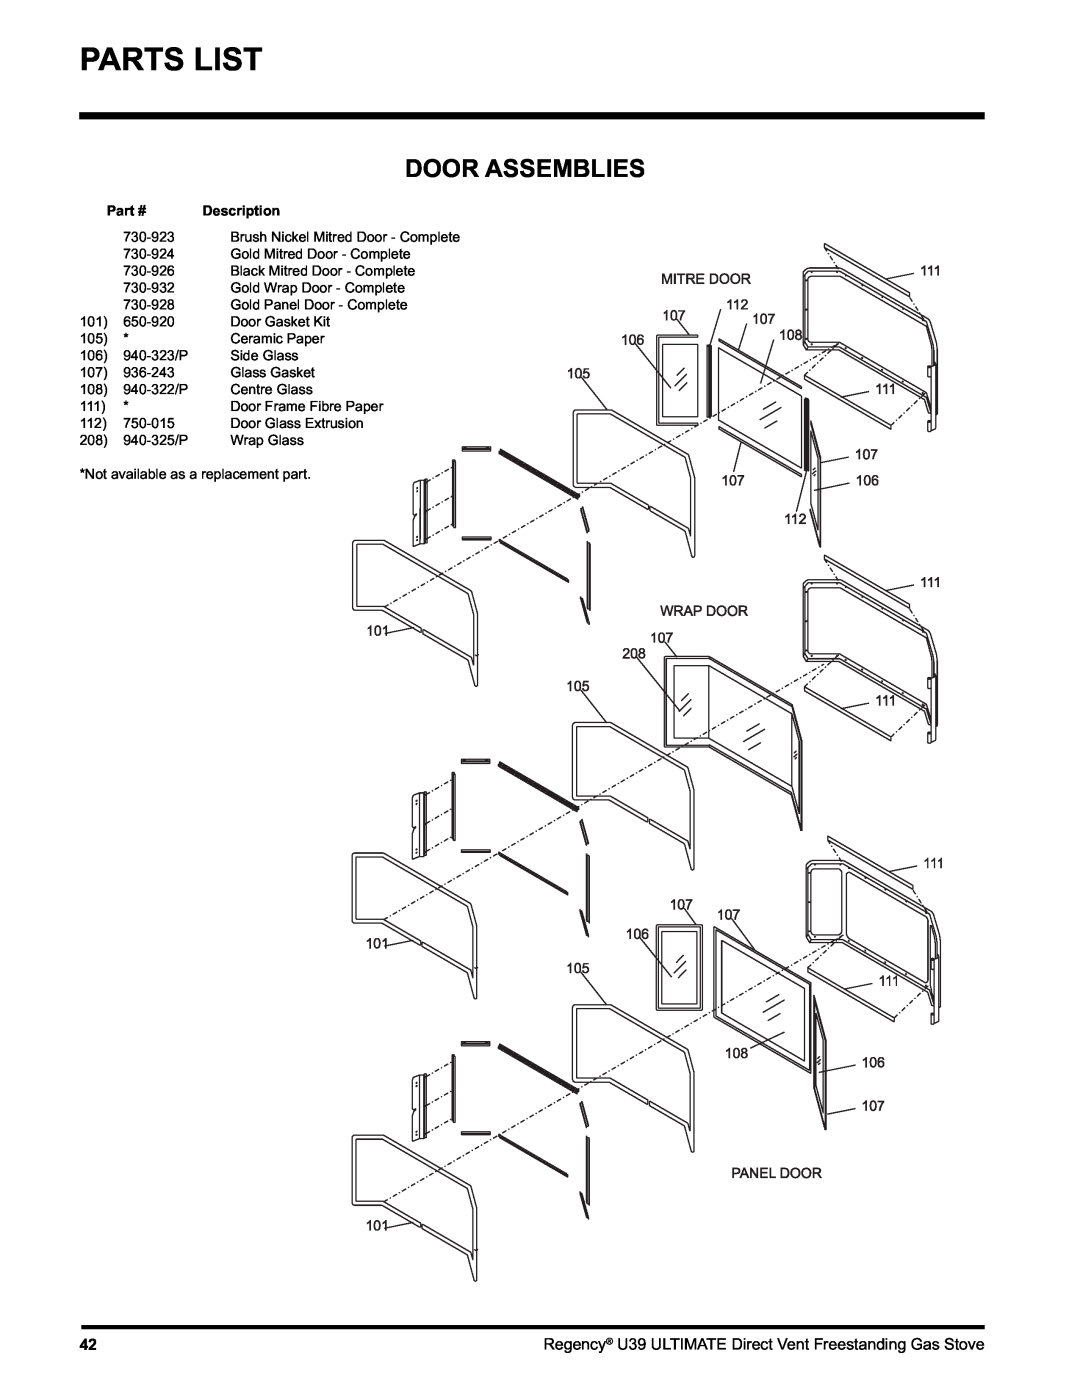 Regency U39-LP1, U39-NG1 installation manual Parts List, Door Assemblies, Description 